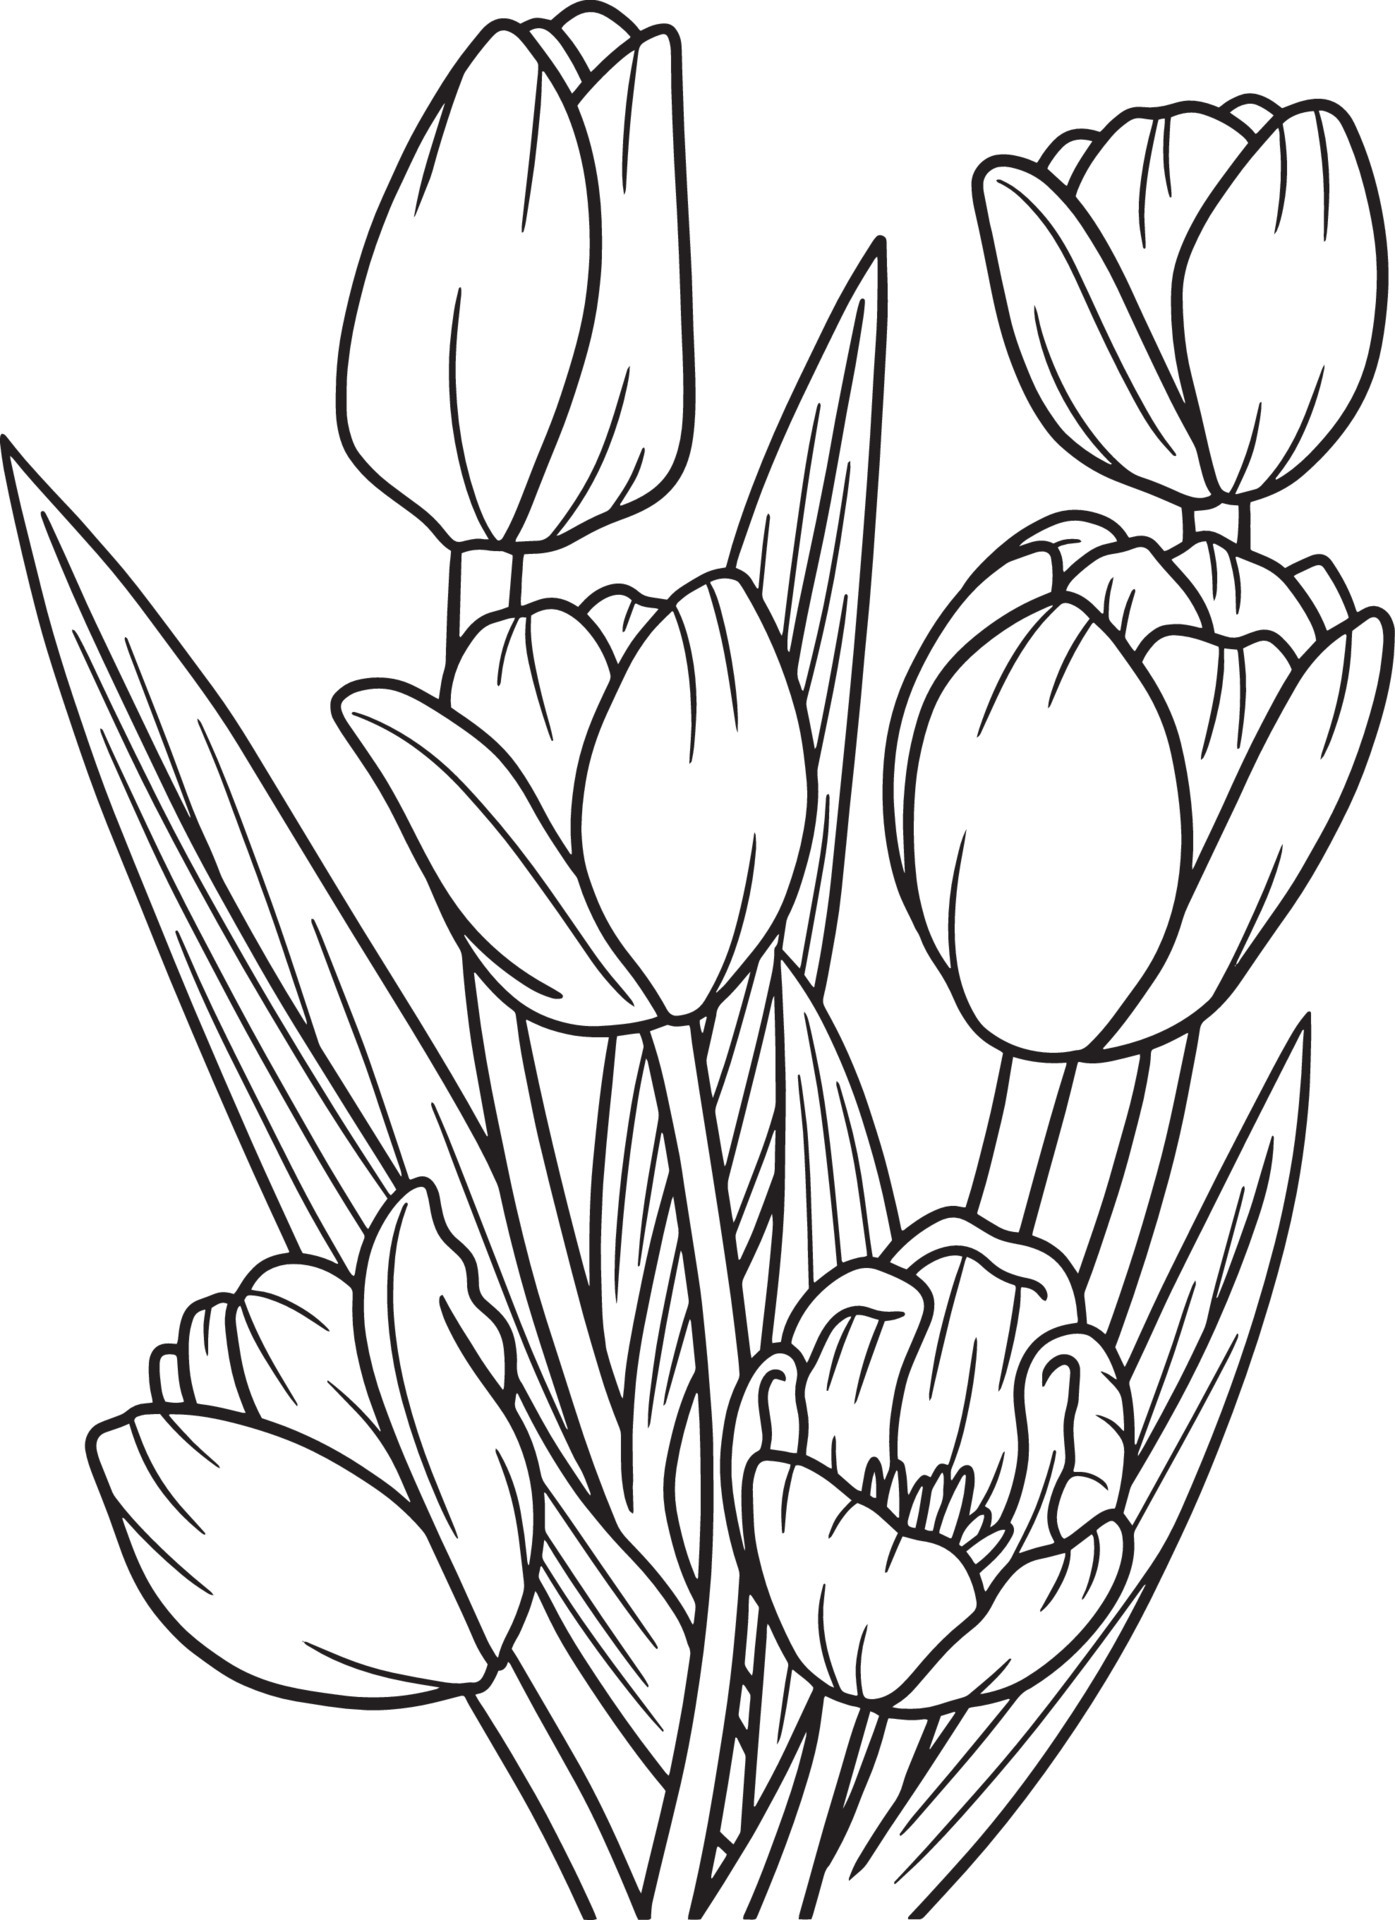 Coloring tulips for preschoolers